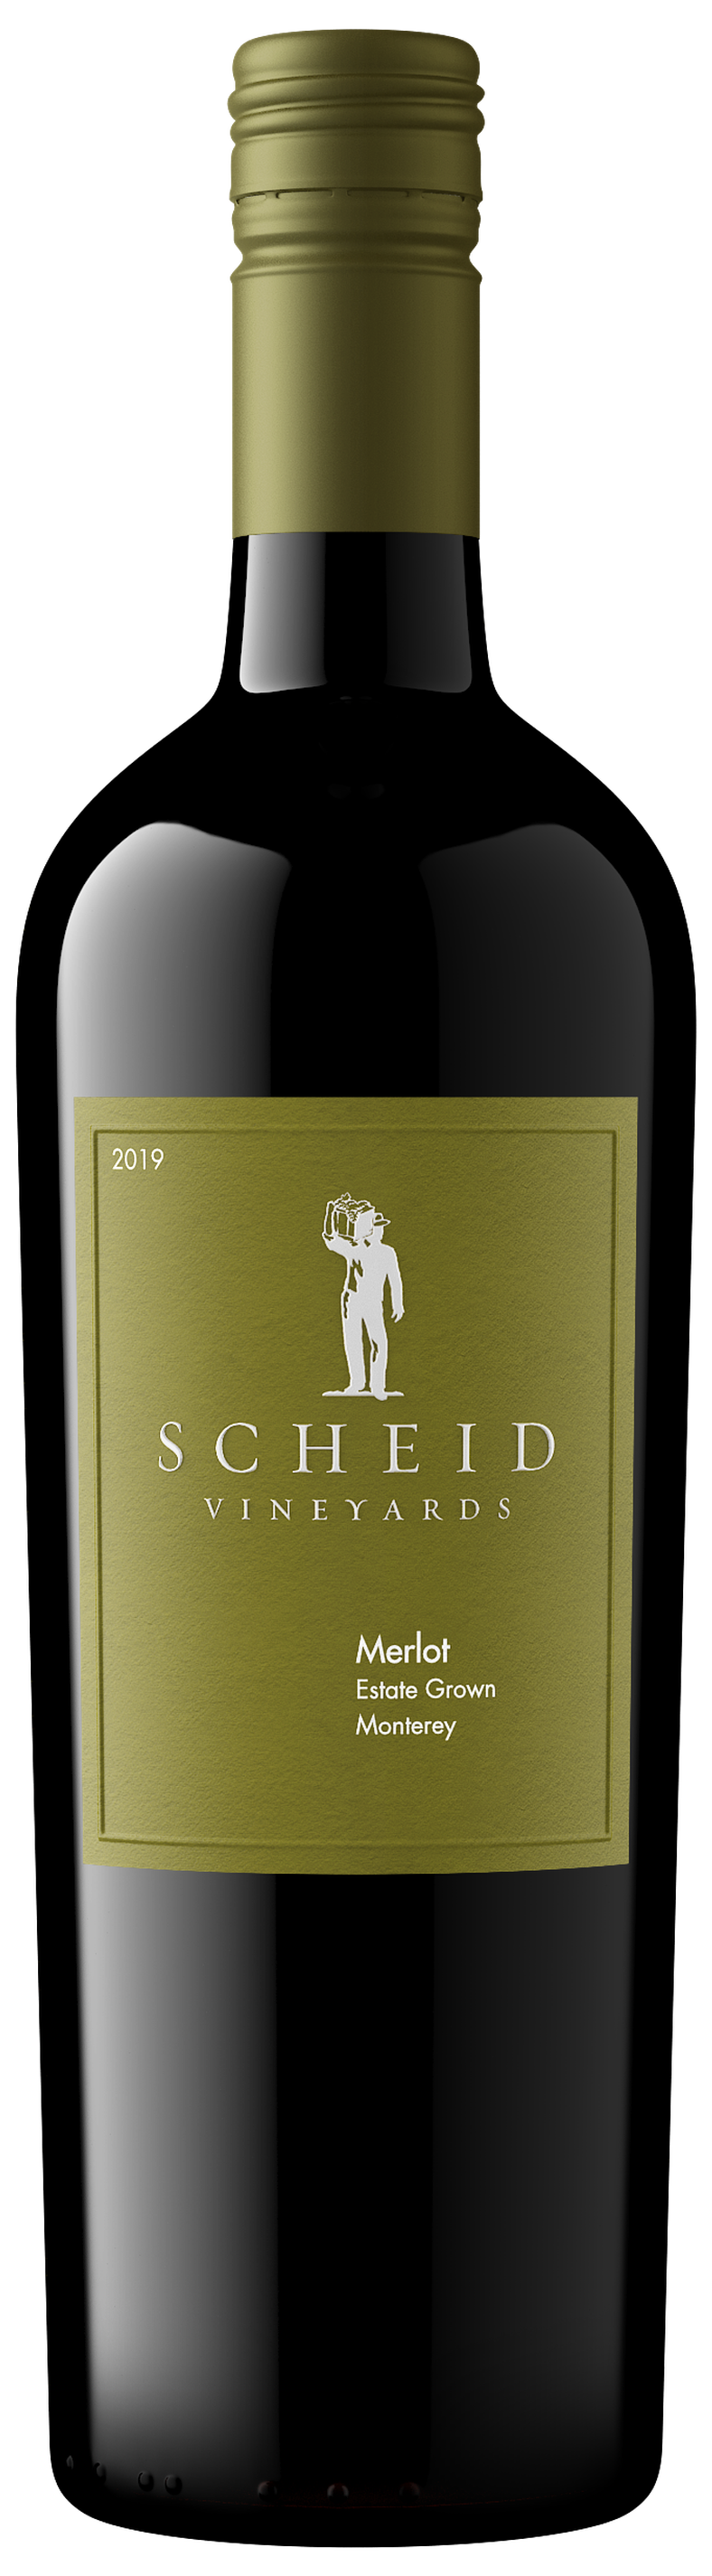 2019 - Vineyards Products Scheid Merlot -